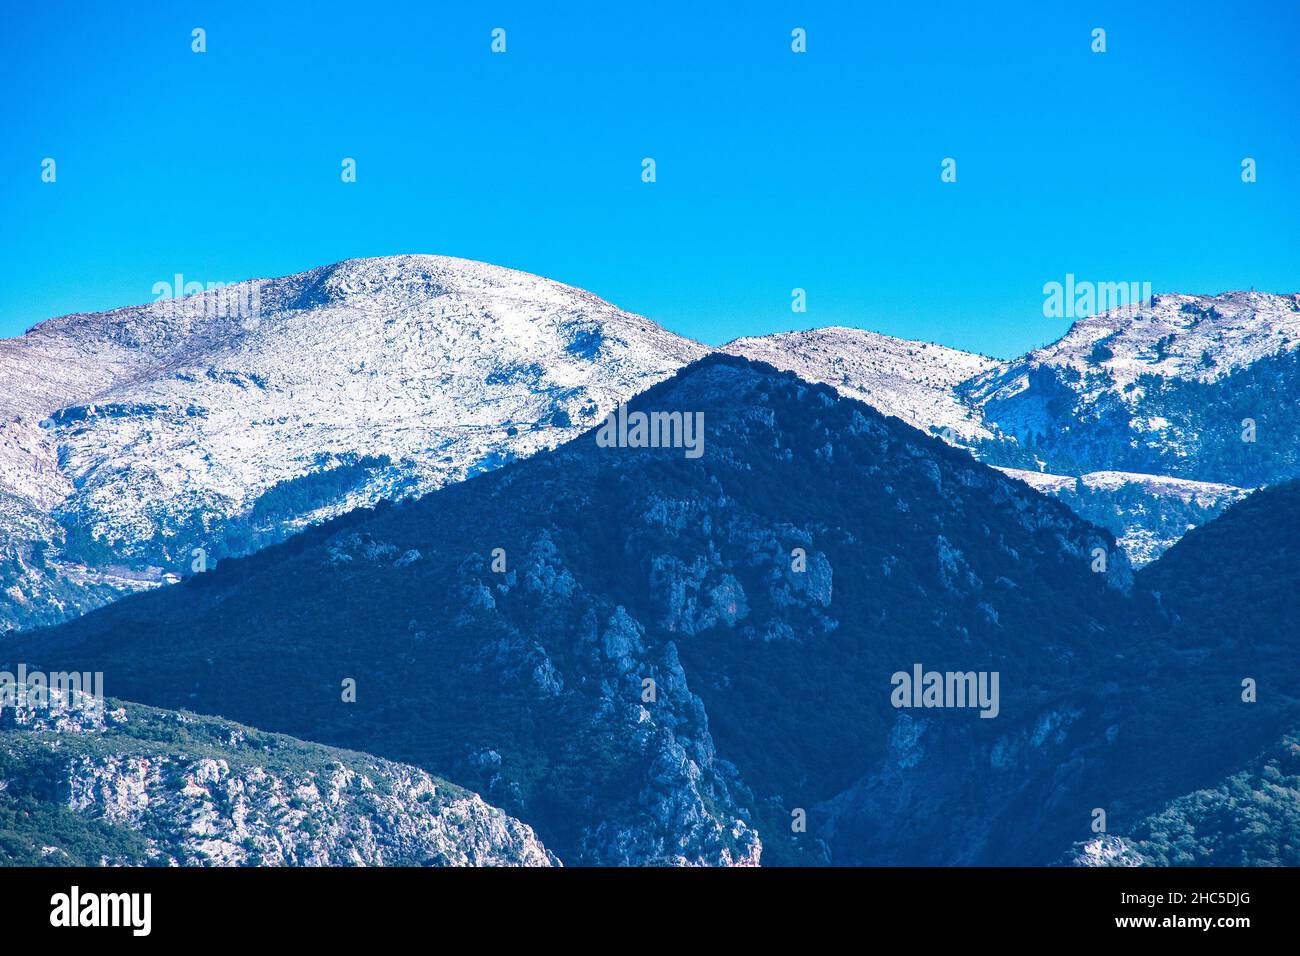 Vista panoramica della foresta innevata nella montagna di Taygetus (conosciuta anche come Taaugetus o Taygetos) nella Grecia Peloponneso. Foto Stock